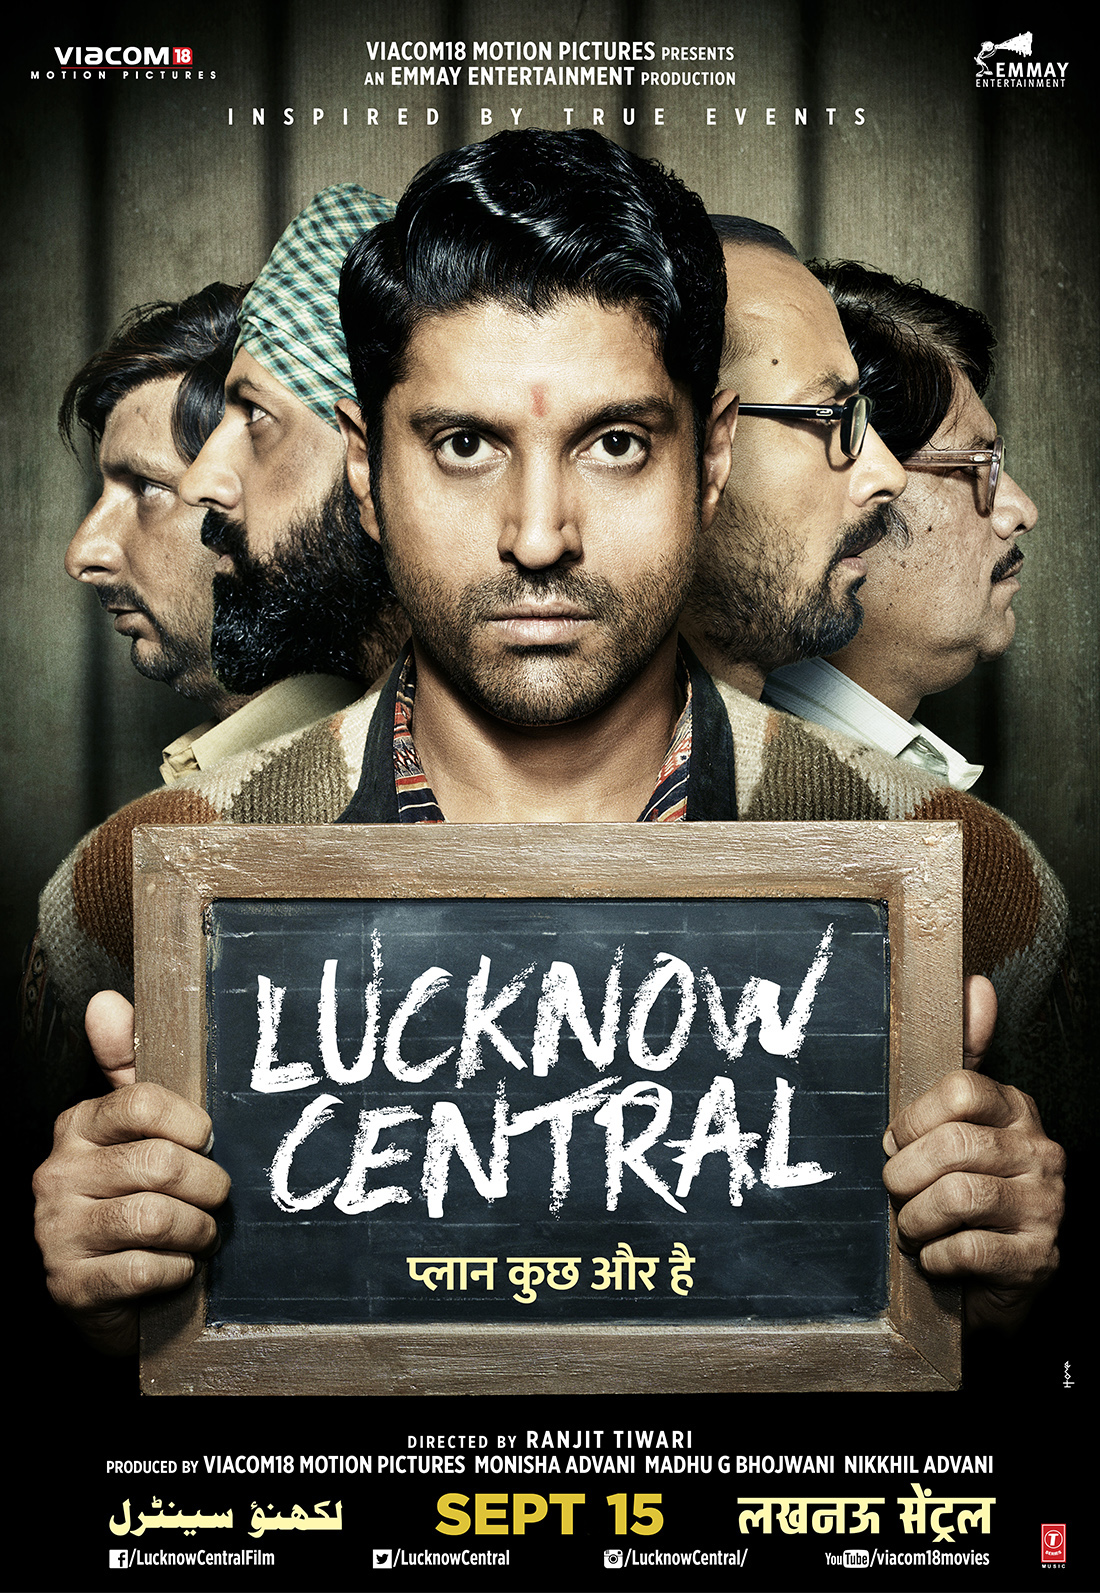 Nonton film Lucknow Central layarkaca21 indoxx1 ganool online streaming terbaru